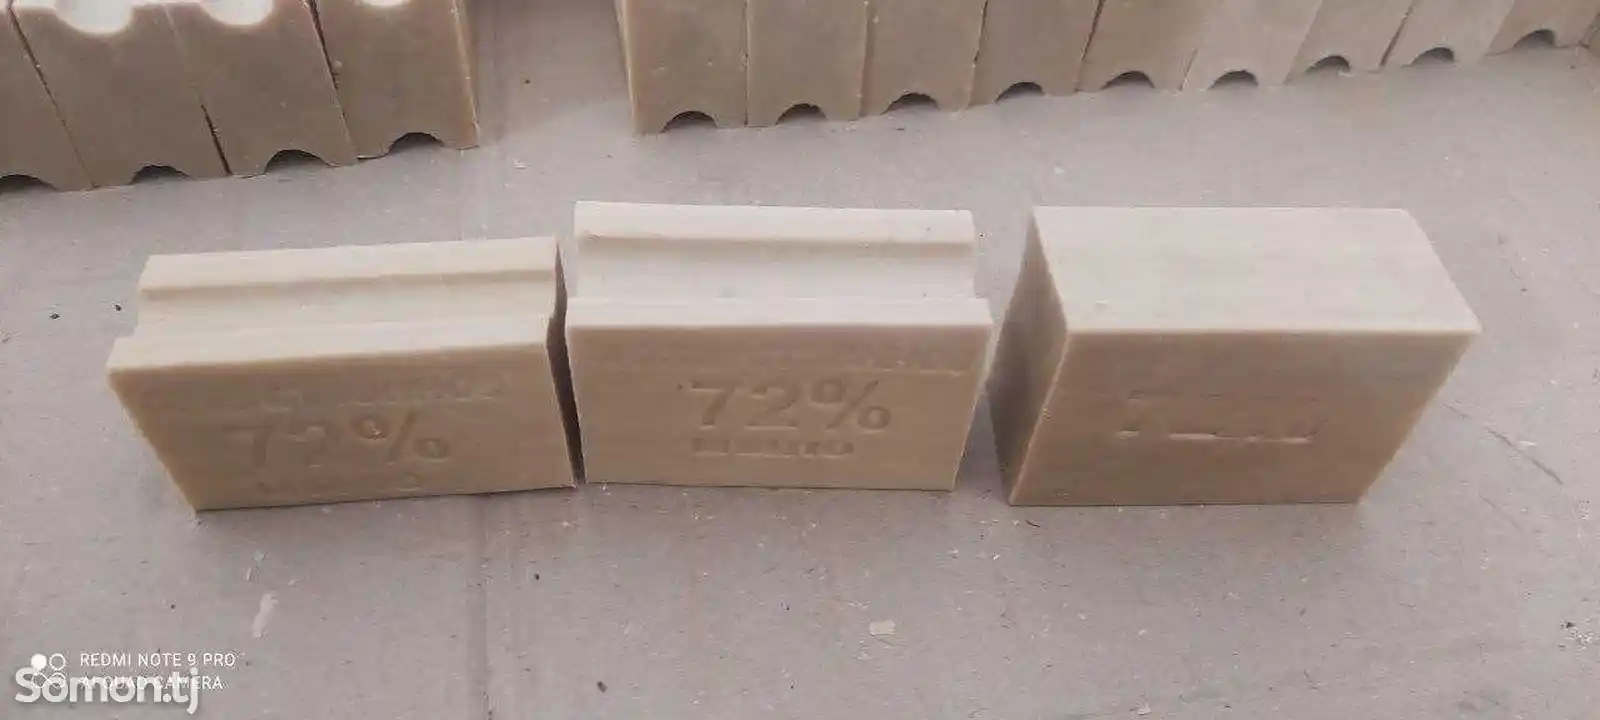 Оборудование для производство хоз мыла /комплект/ производство Узбекис-6